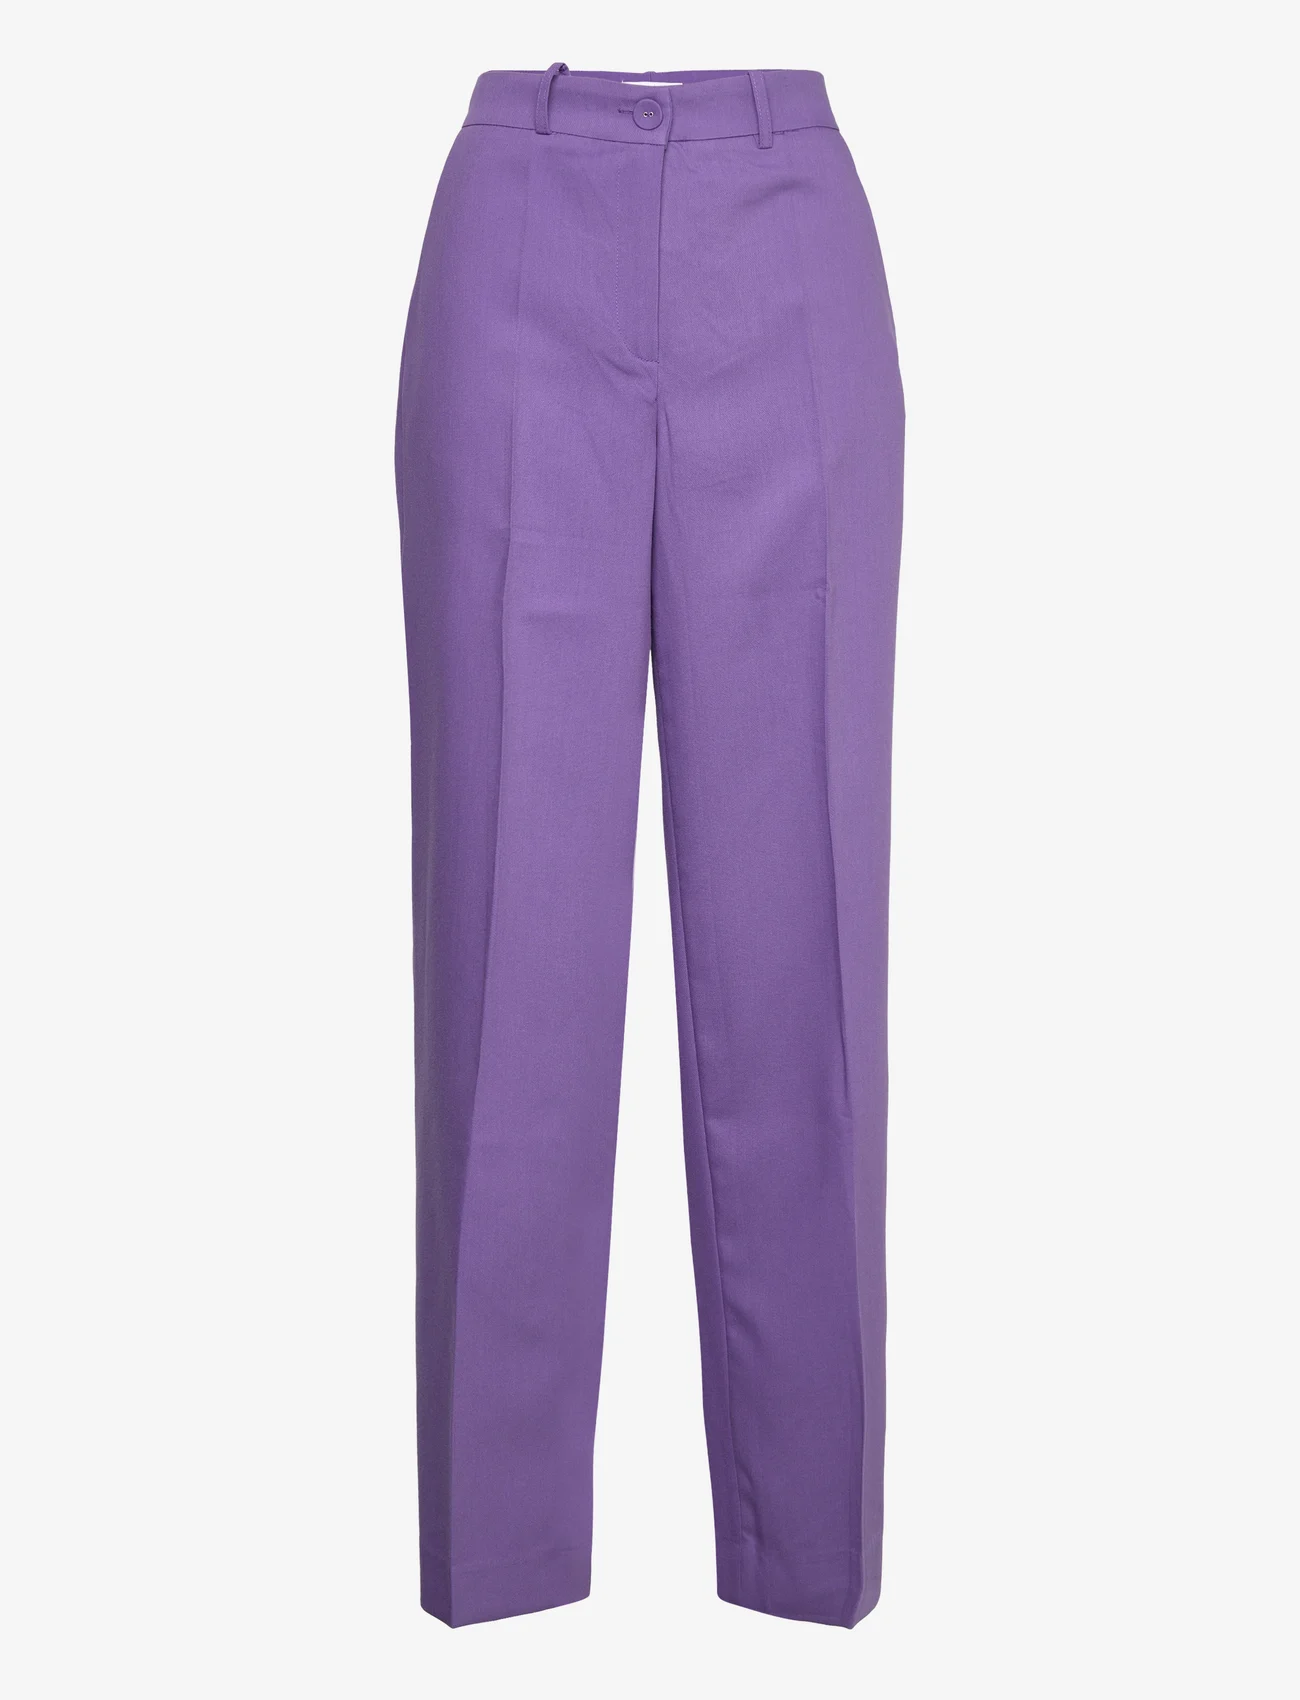 Coster Copenhagen - Pants with wide legs - Petra fit - wide leg trousers - warm purple - 0